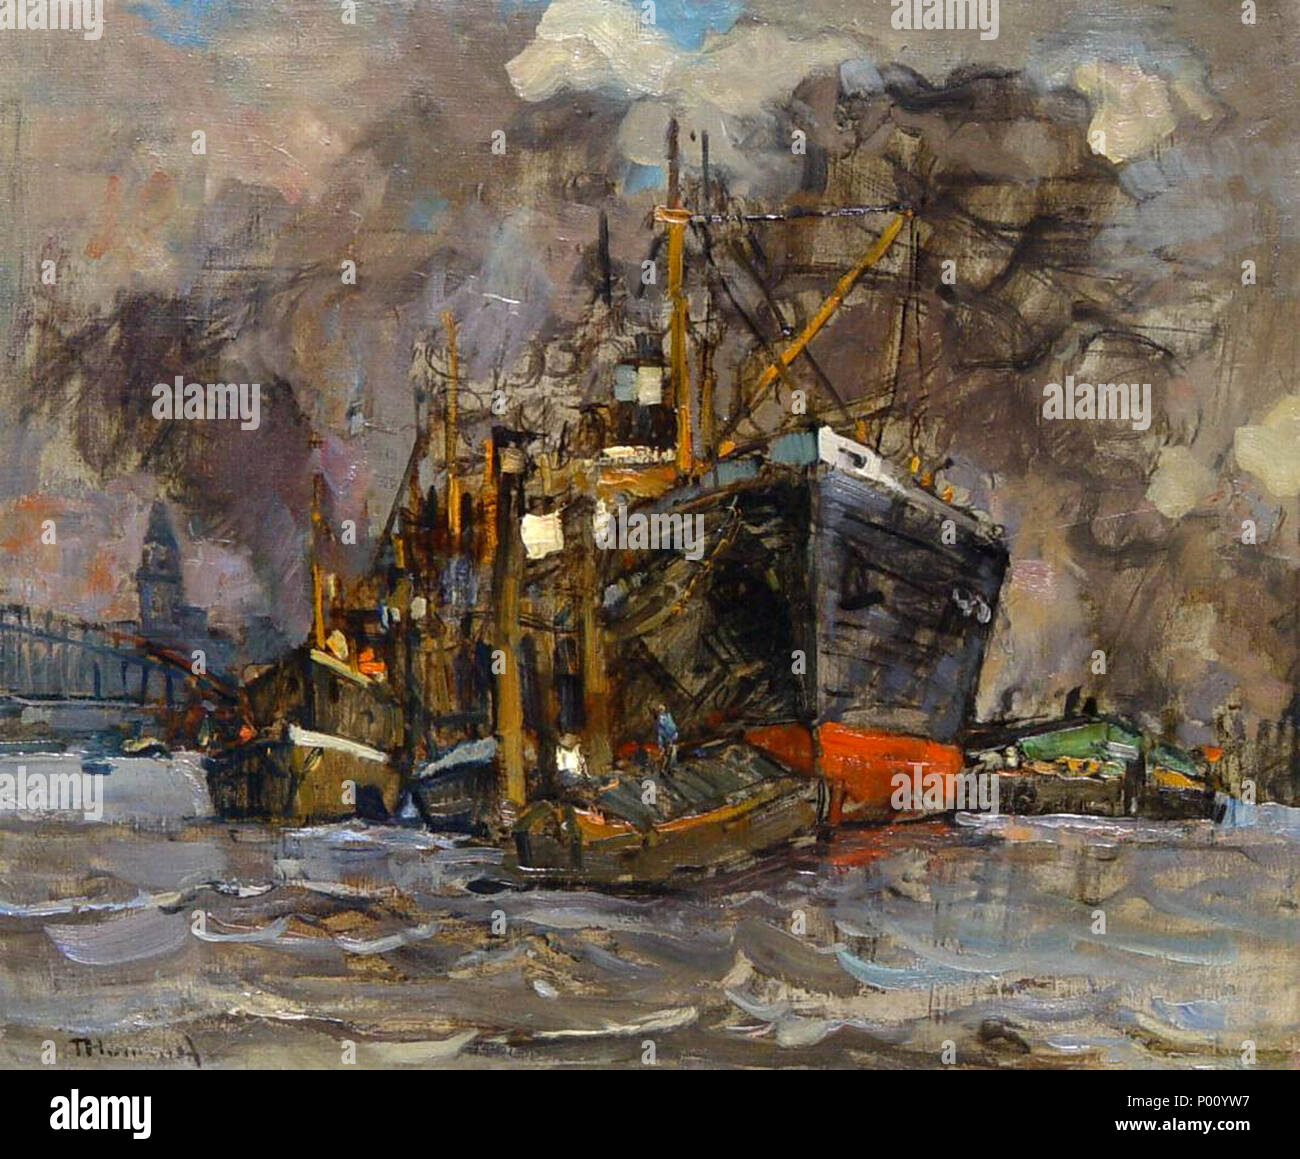 Deutsch: Motiv aus dem Hamburger Hafen; Öl auf Leinwand; 57 × 67 cm (22.4 × 26.3 in) . by 1939. Theodor Hummel 99 Theodor Hummel Hamburger Hafen Stock Photo Alamy